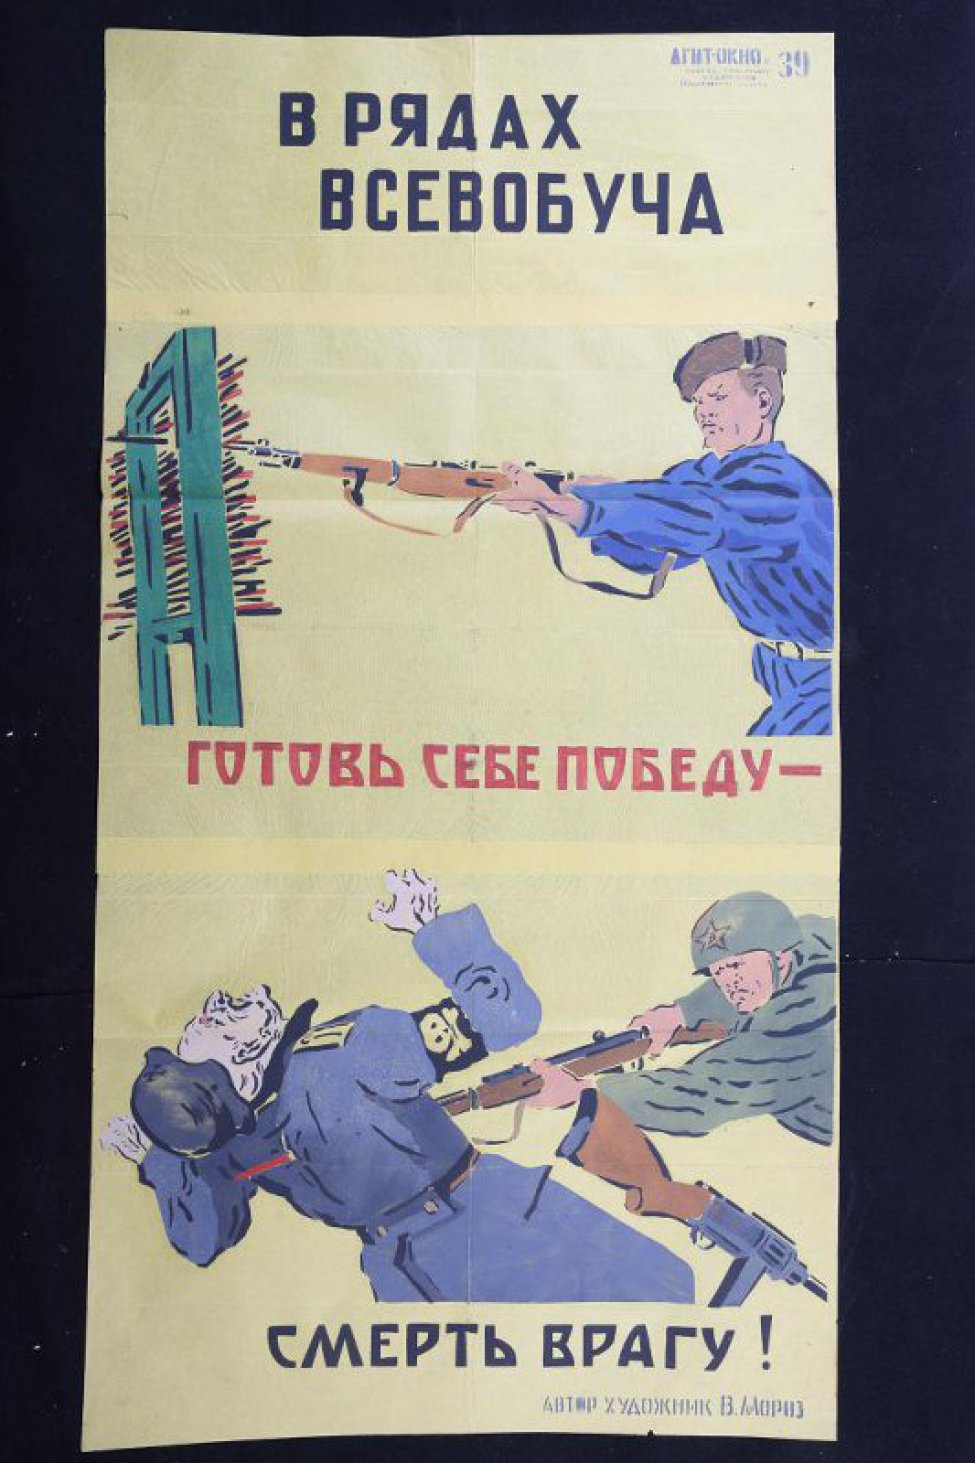 Помещено 2 рисунка: 1) урок штыкового боя; 2) боец Советской Армии, прокалывает фашиста, текст: "смерть врагу!"